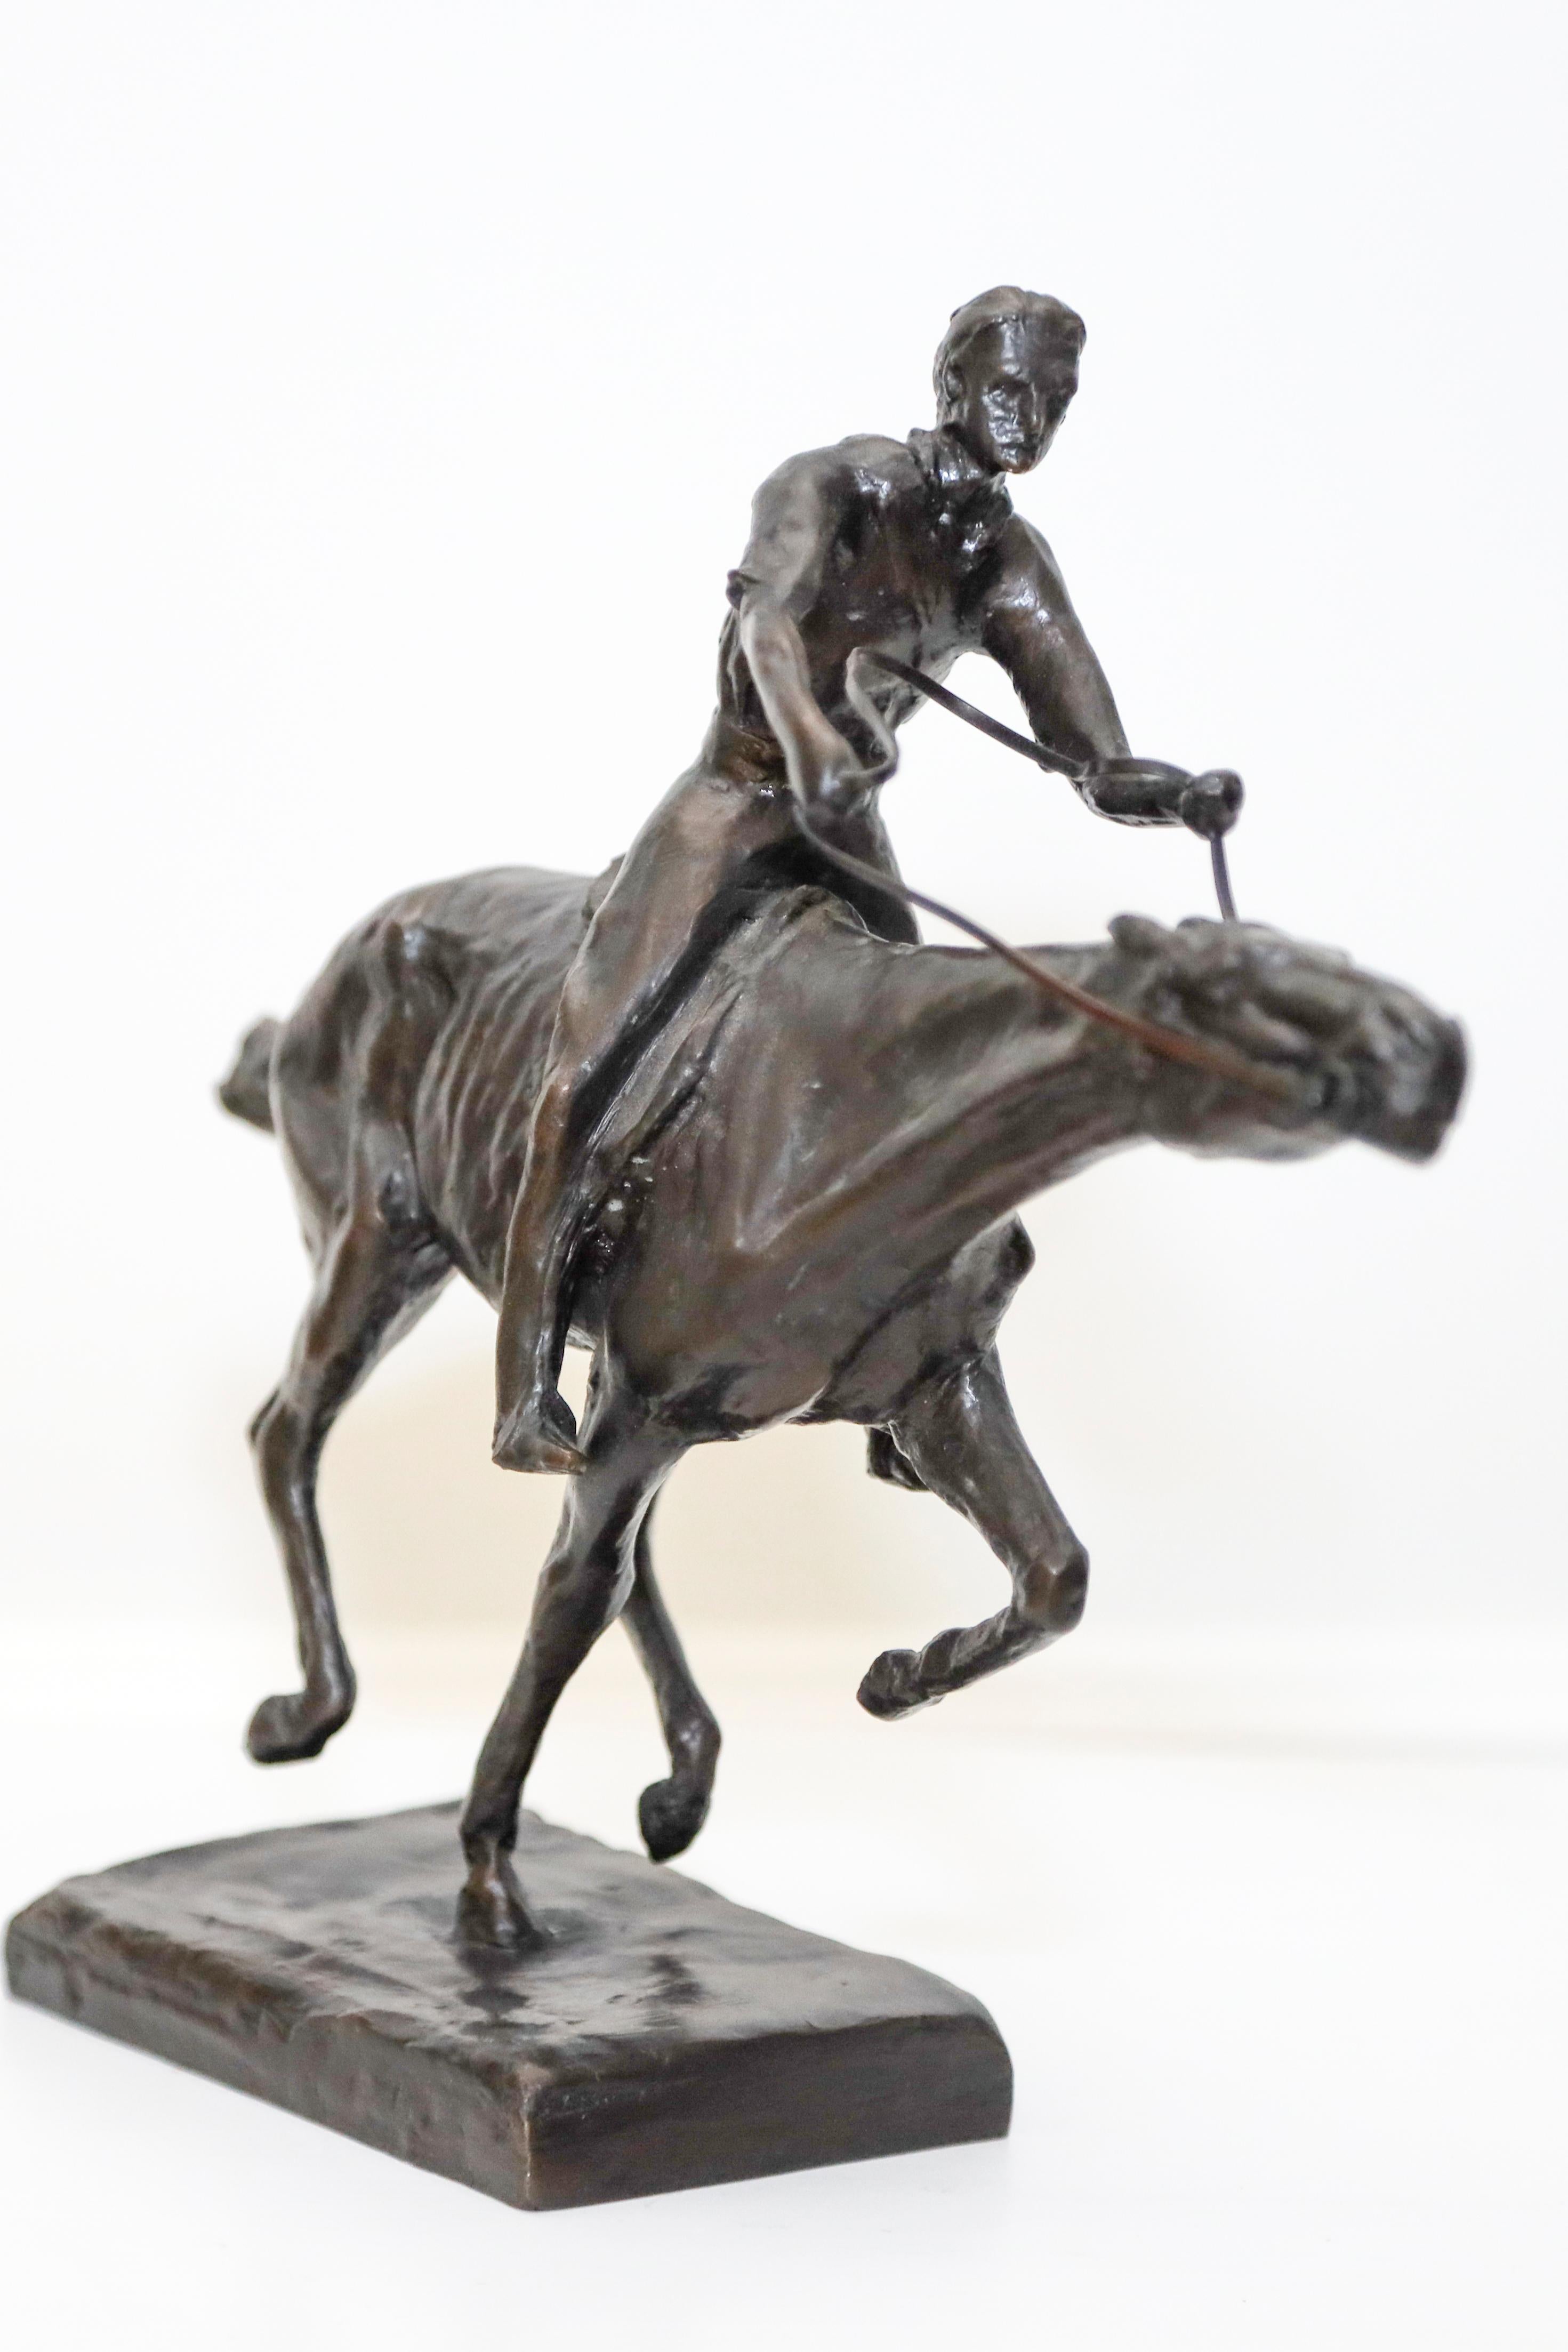 Zu Rumseys Spezialitäten gehörten Pferdeskulpturen - Porträts von Polospielern und Preispferden sowie von Cowboys, Rindern und Pferden als Metaphern. Er arbeitete hauptsächlich in Bronze und Stein, wobei er häufig mythologische und historische